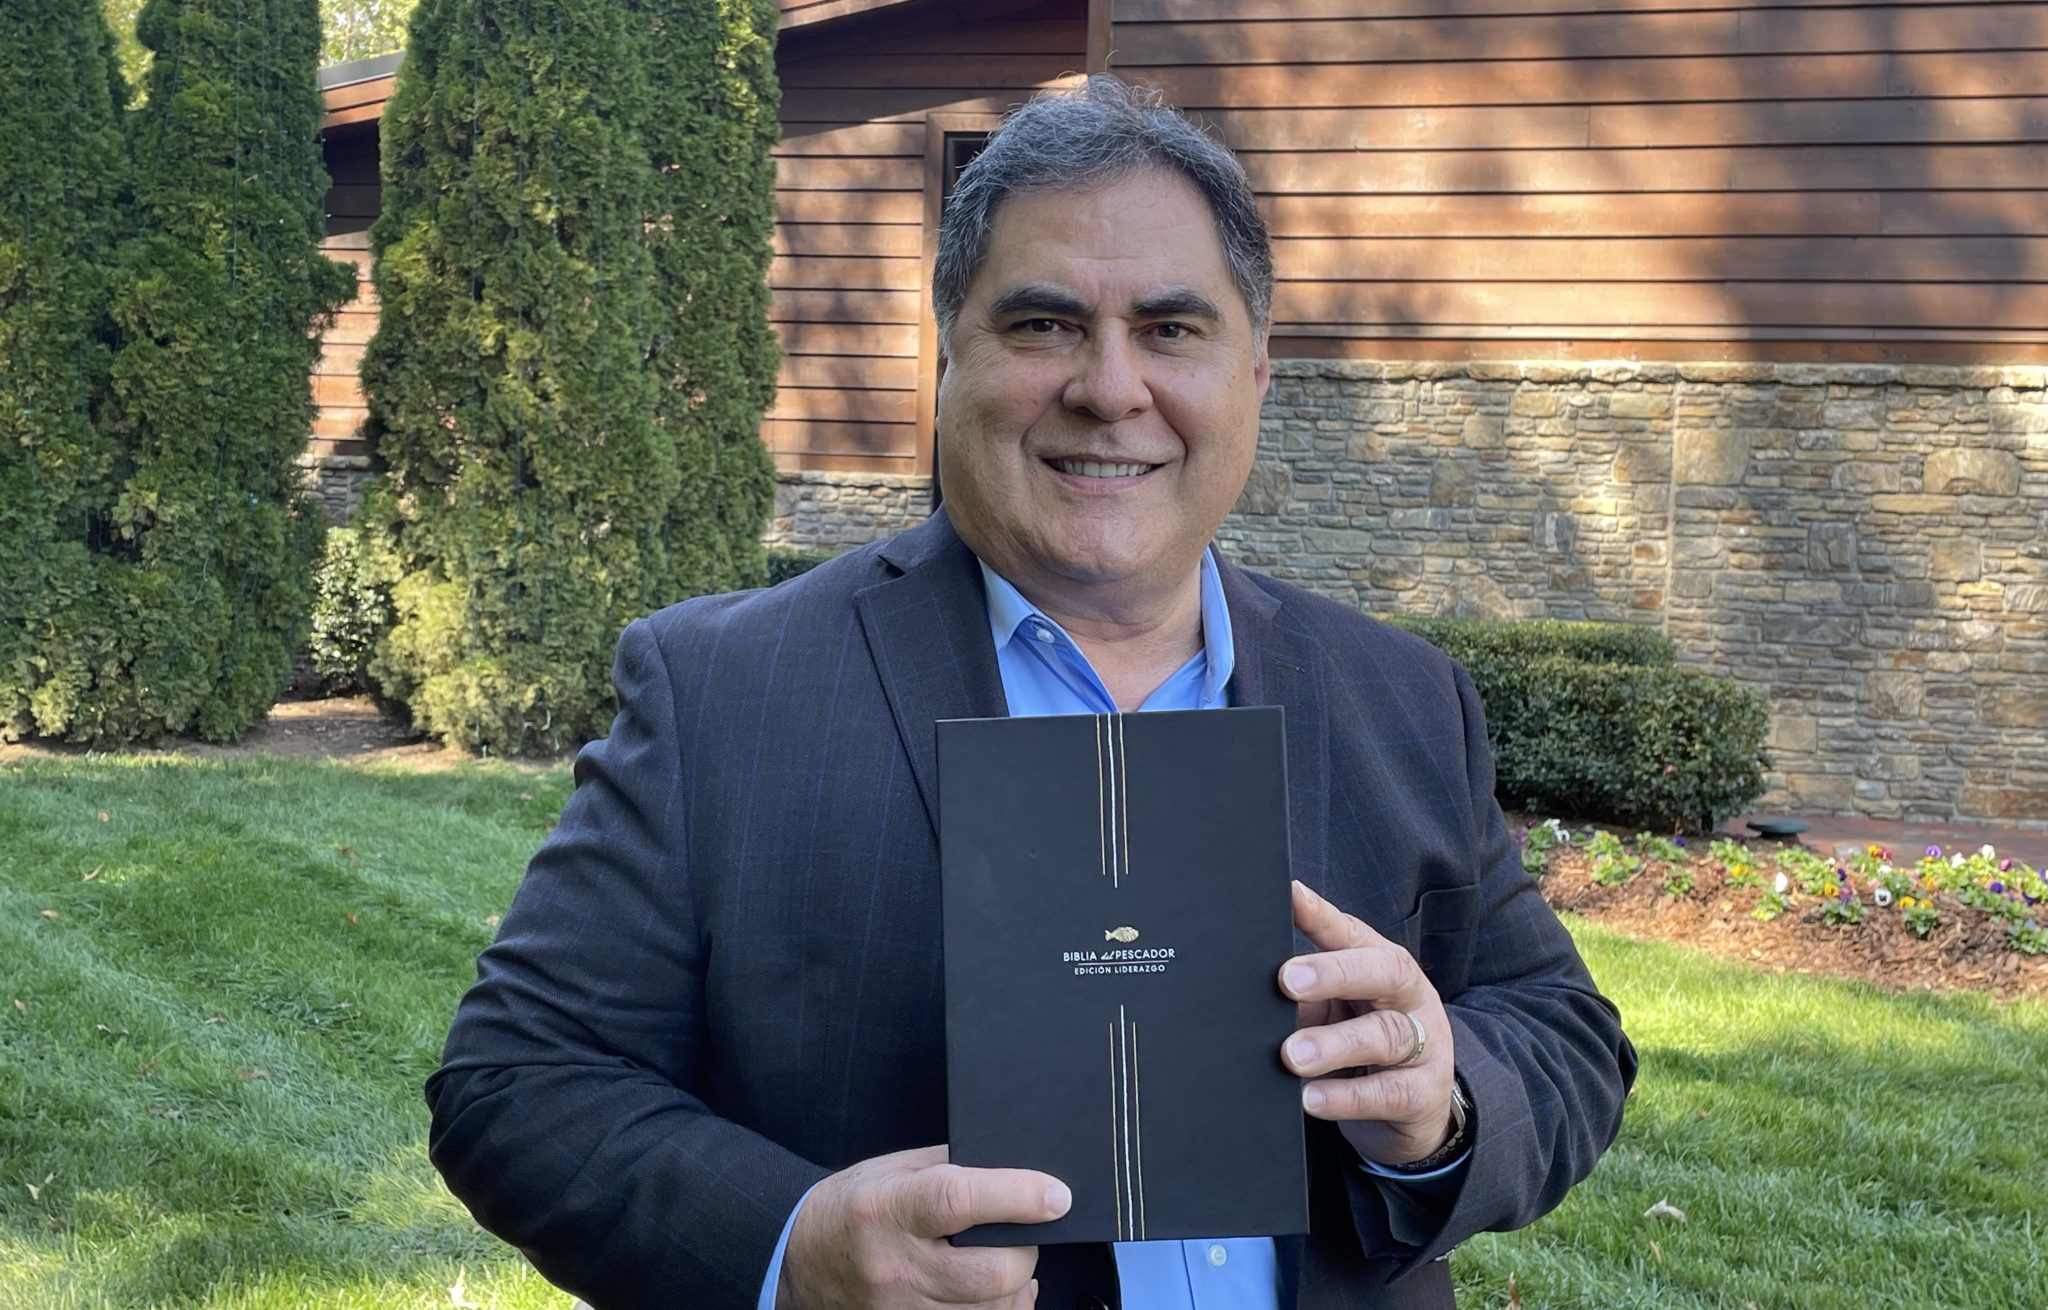 Lifeway y Biblias Holman se complacen en presentar junto al ministerio del Dr. Díaz-Pabón la nueva versión de la Biblia del Pescador, Edición Liderazgo.